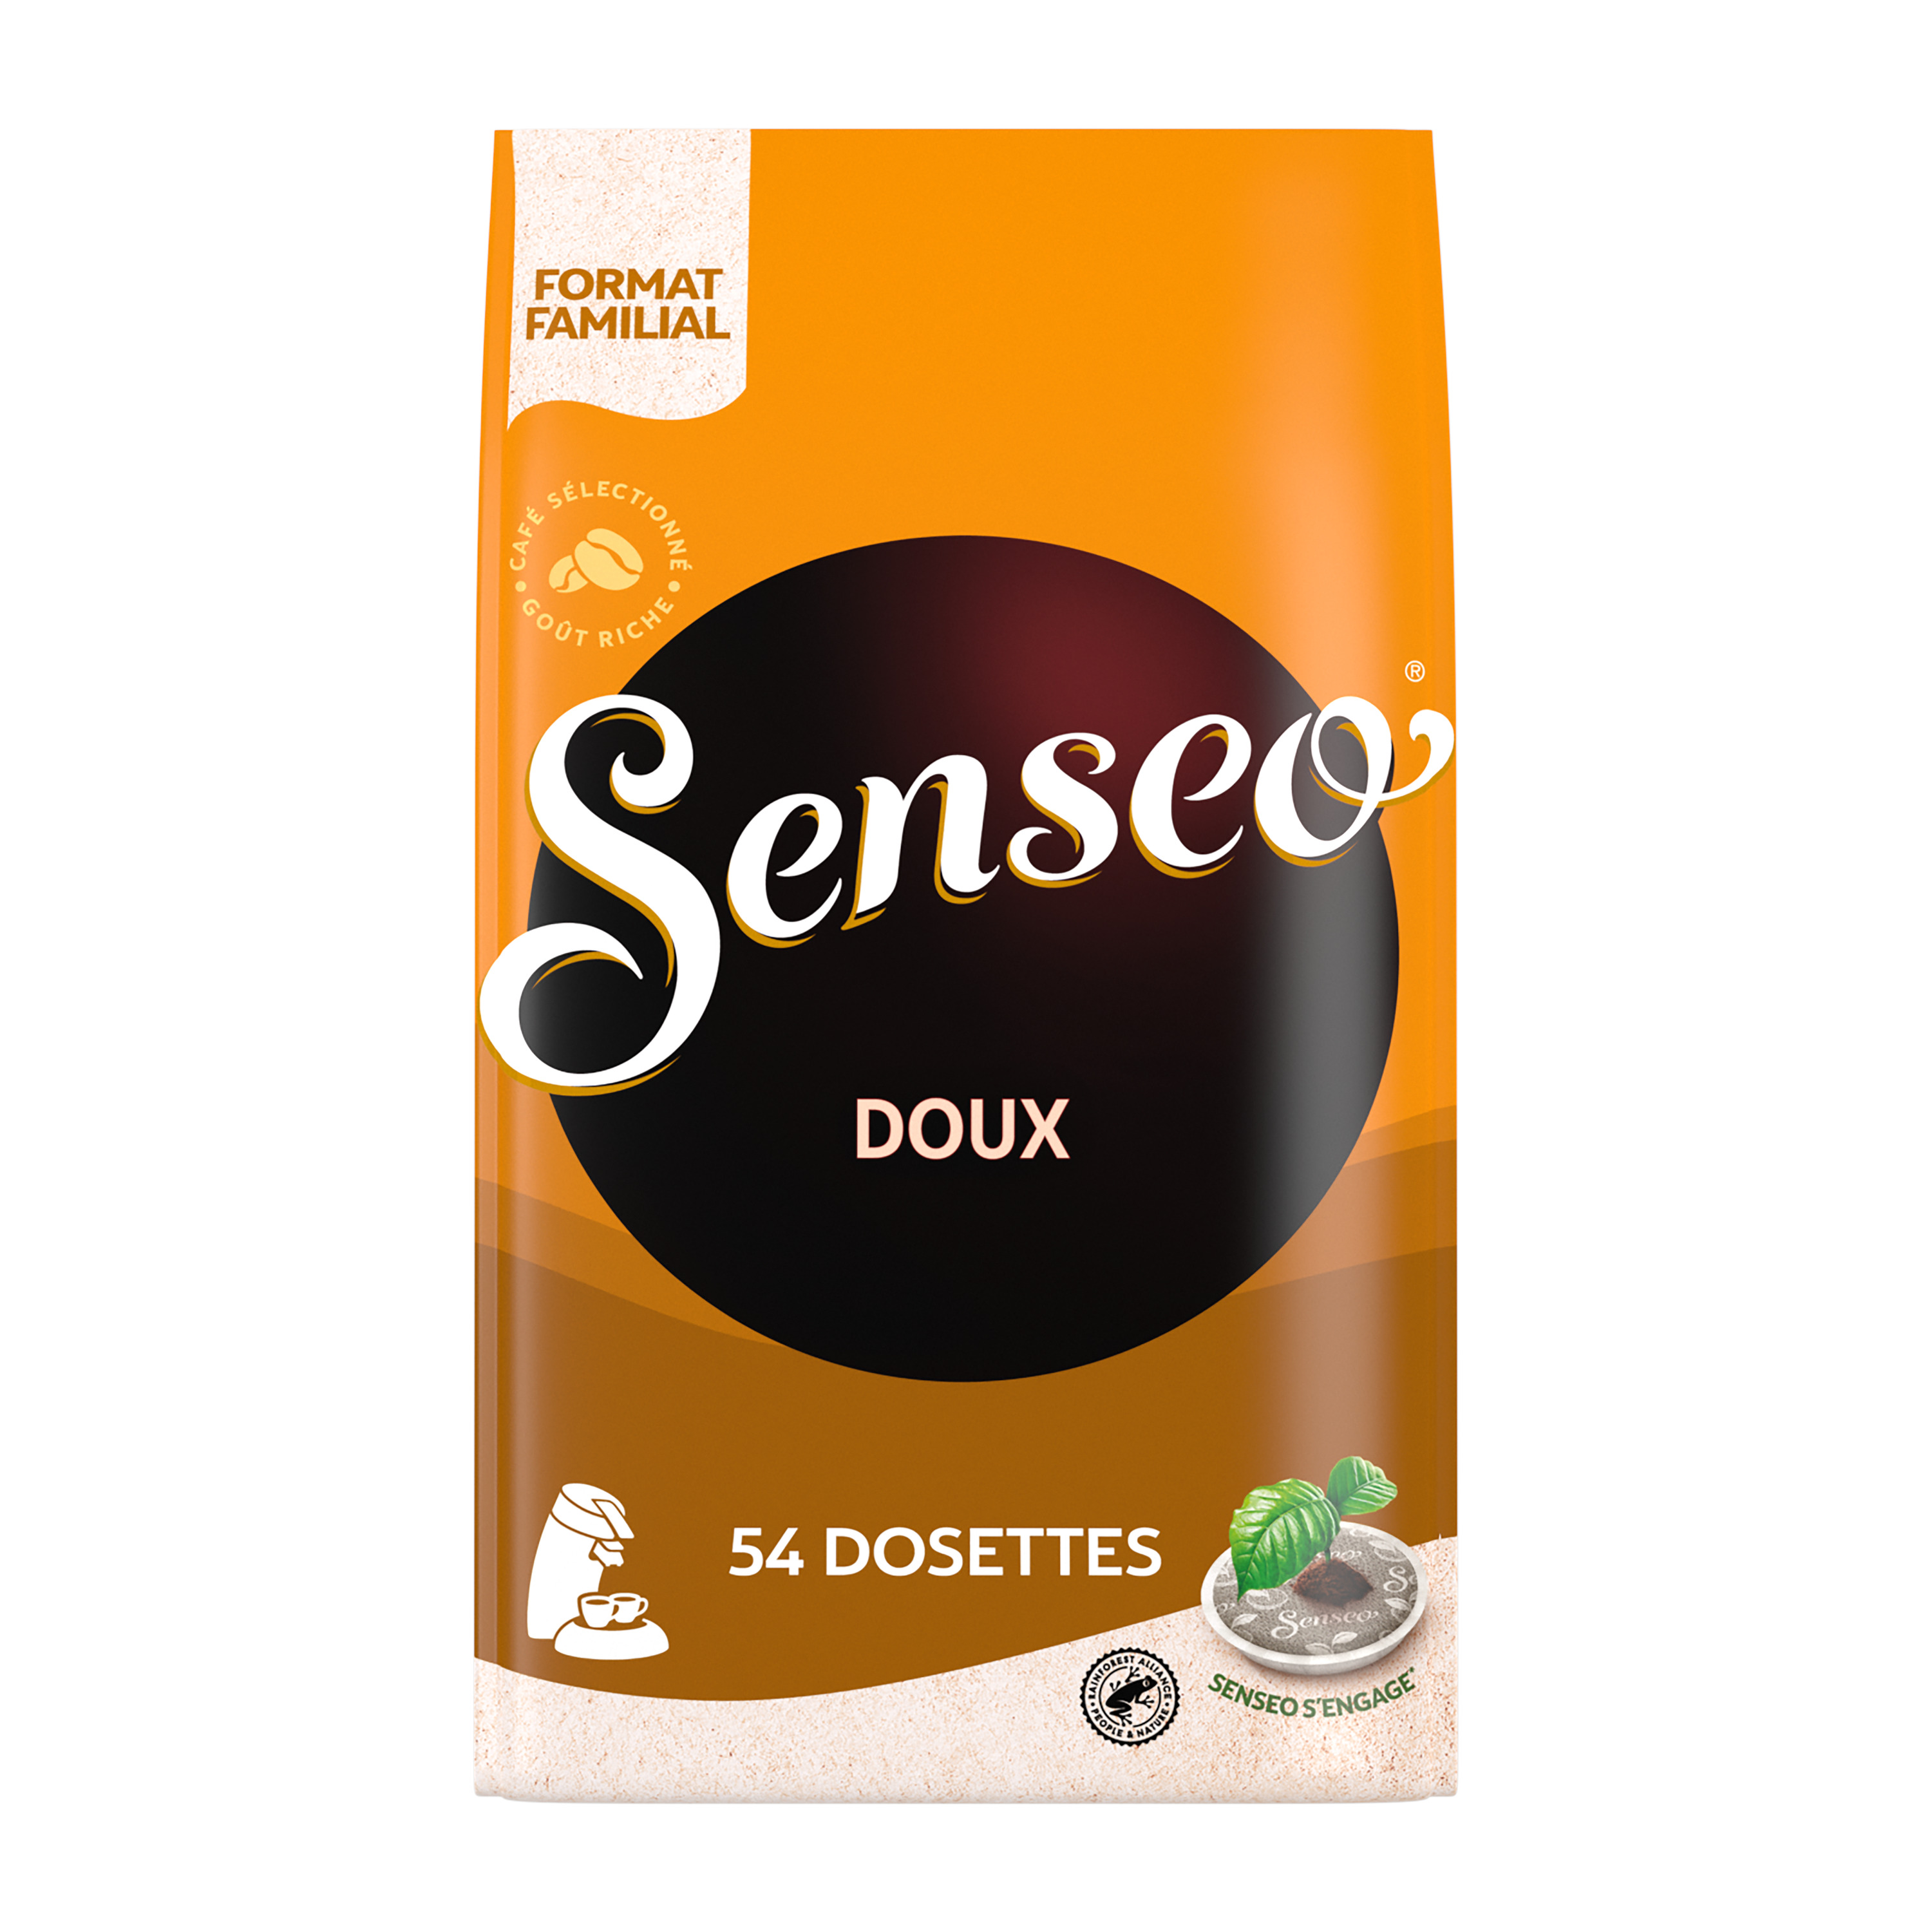 Senseo café DOUX paquet de 16 Dosettes